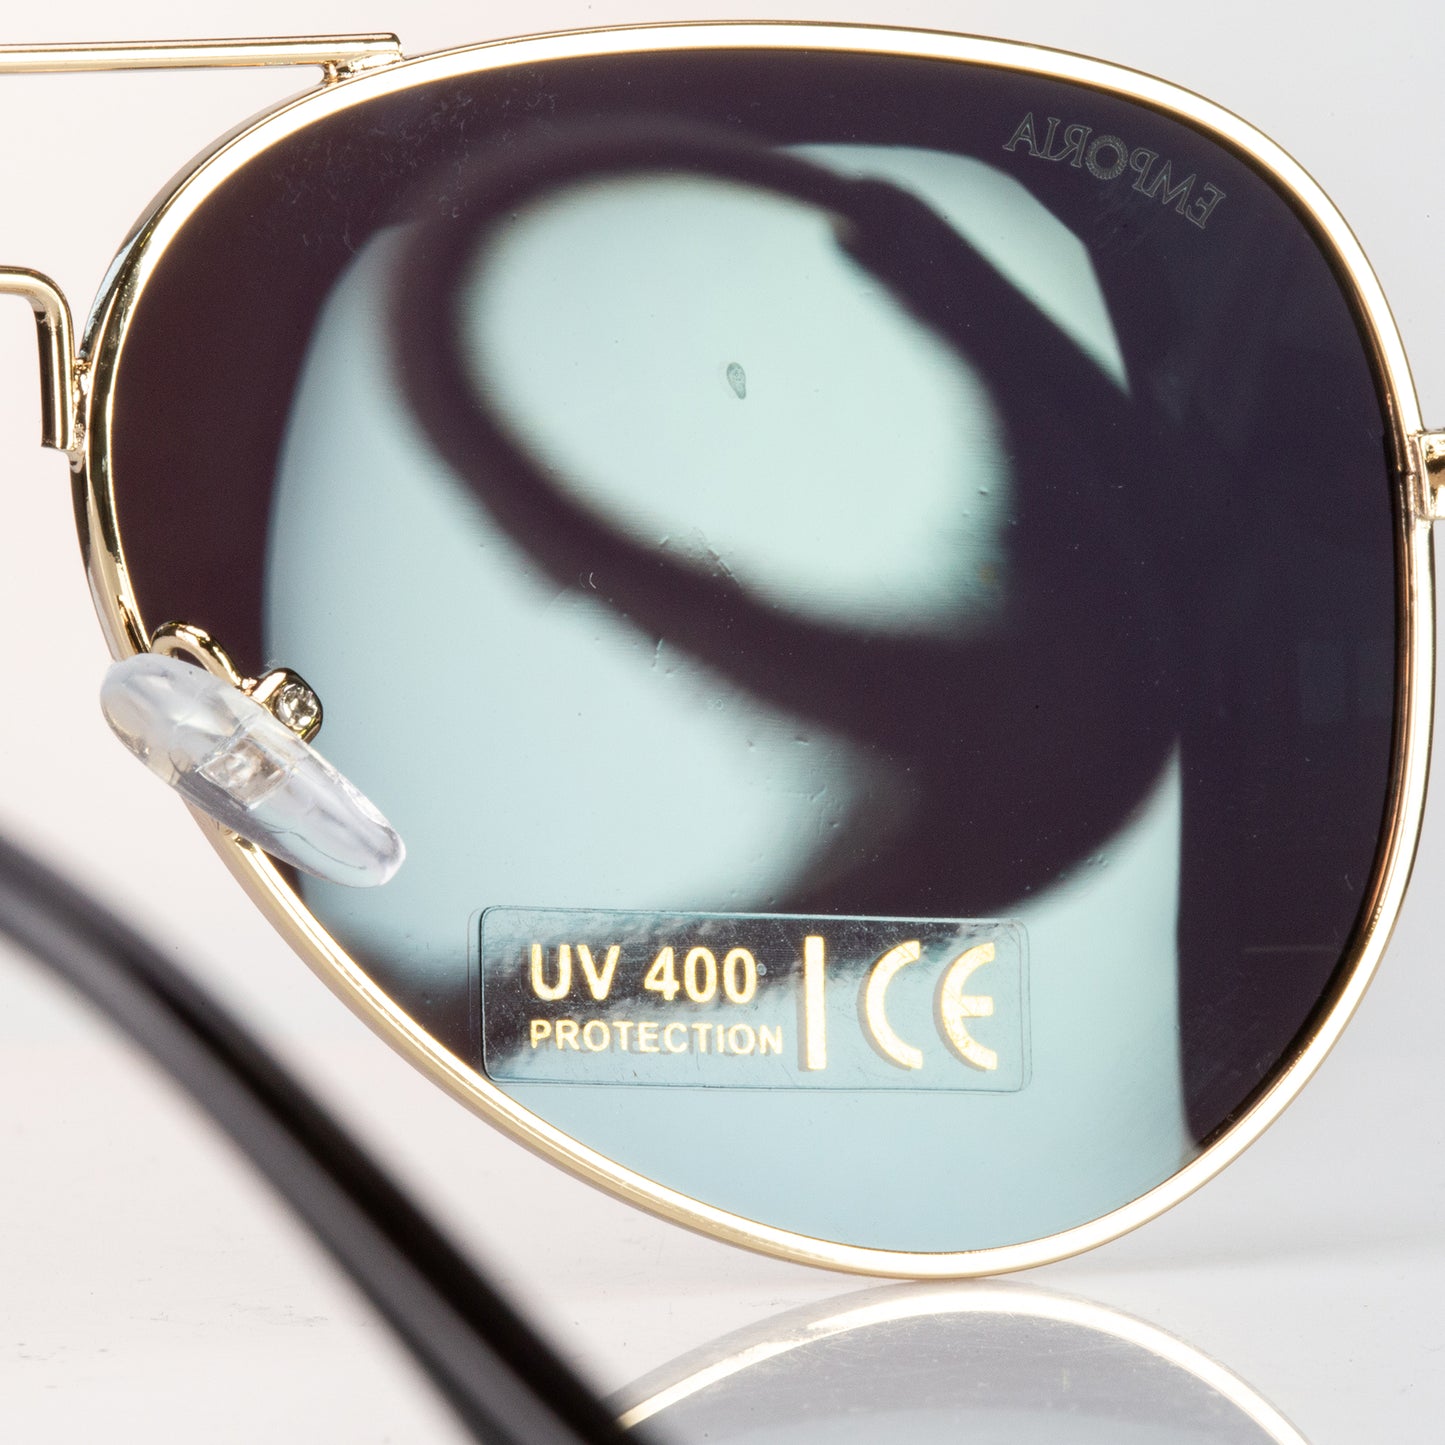 Emporia Italy - Pilóta Napszemüveg "DZSUNGEL", polarizált UV szűrős napszemüveg tokkal és tisztítókendővel, sárgászöld lencsék, arany színű keret